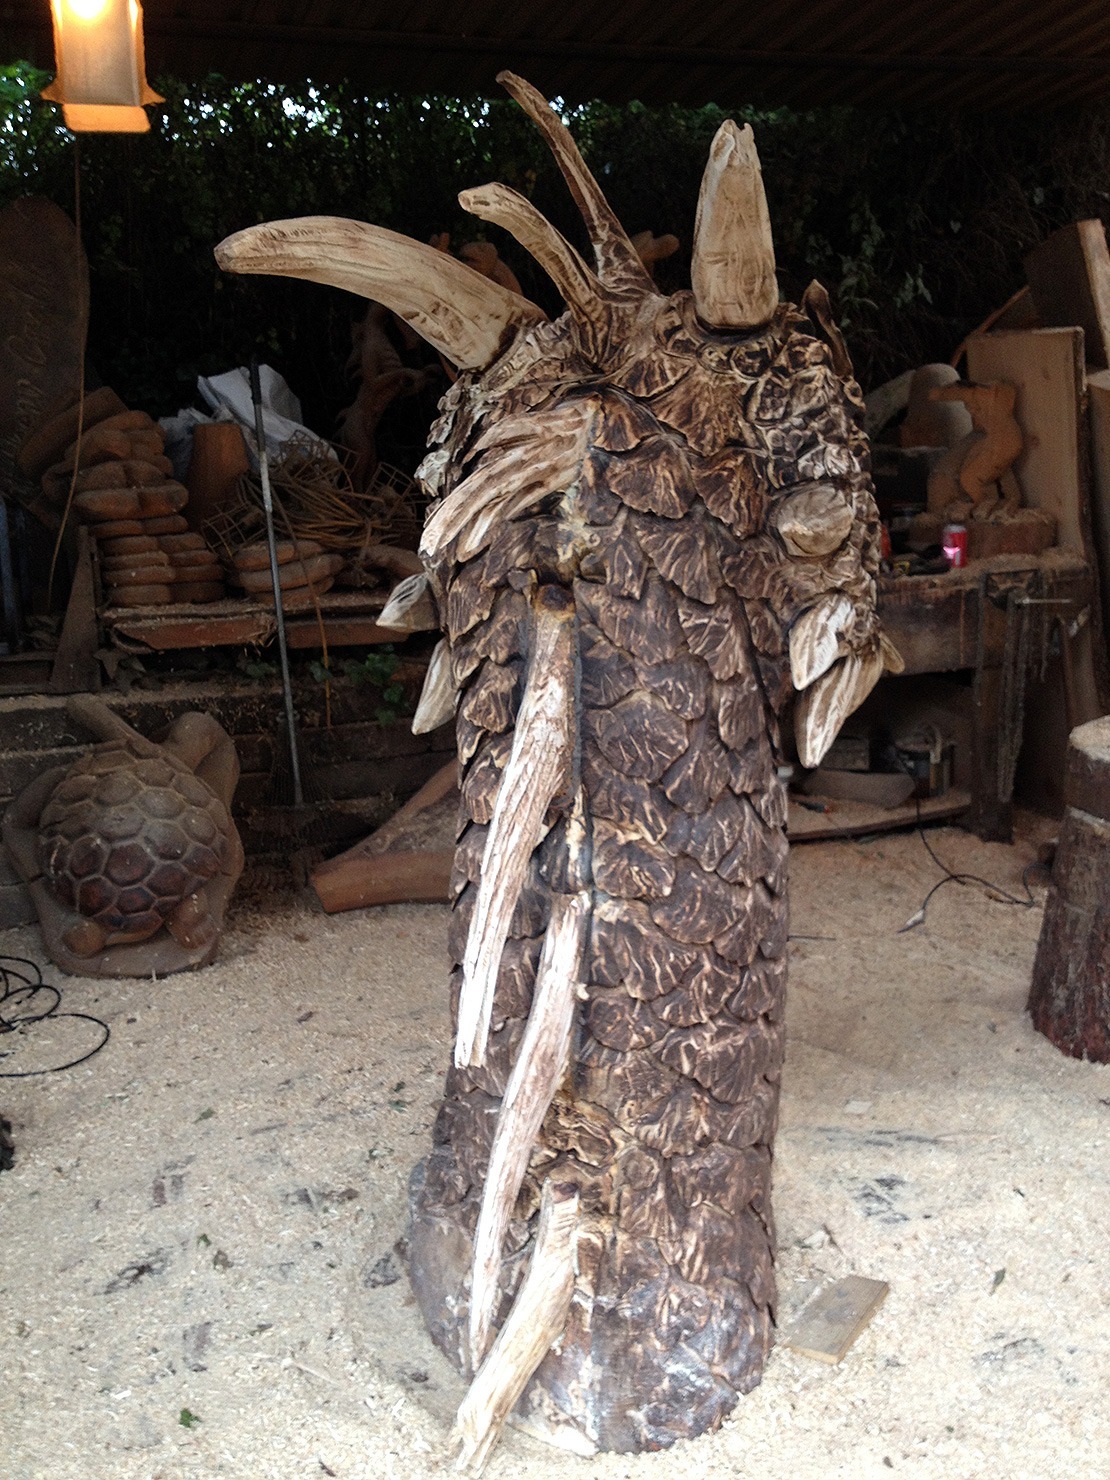 Dragon head sculpture